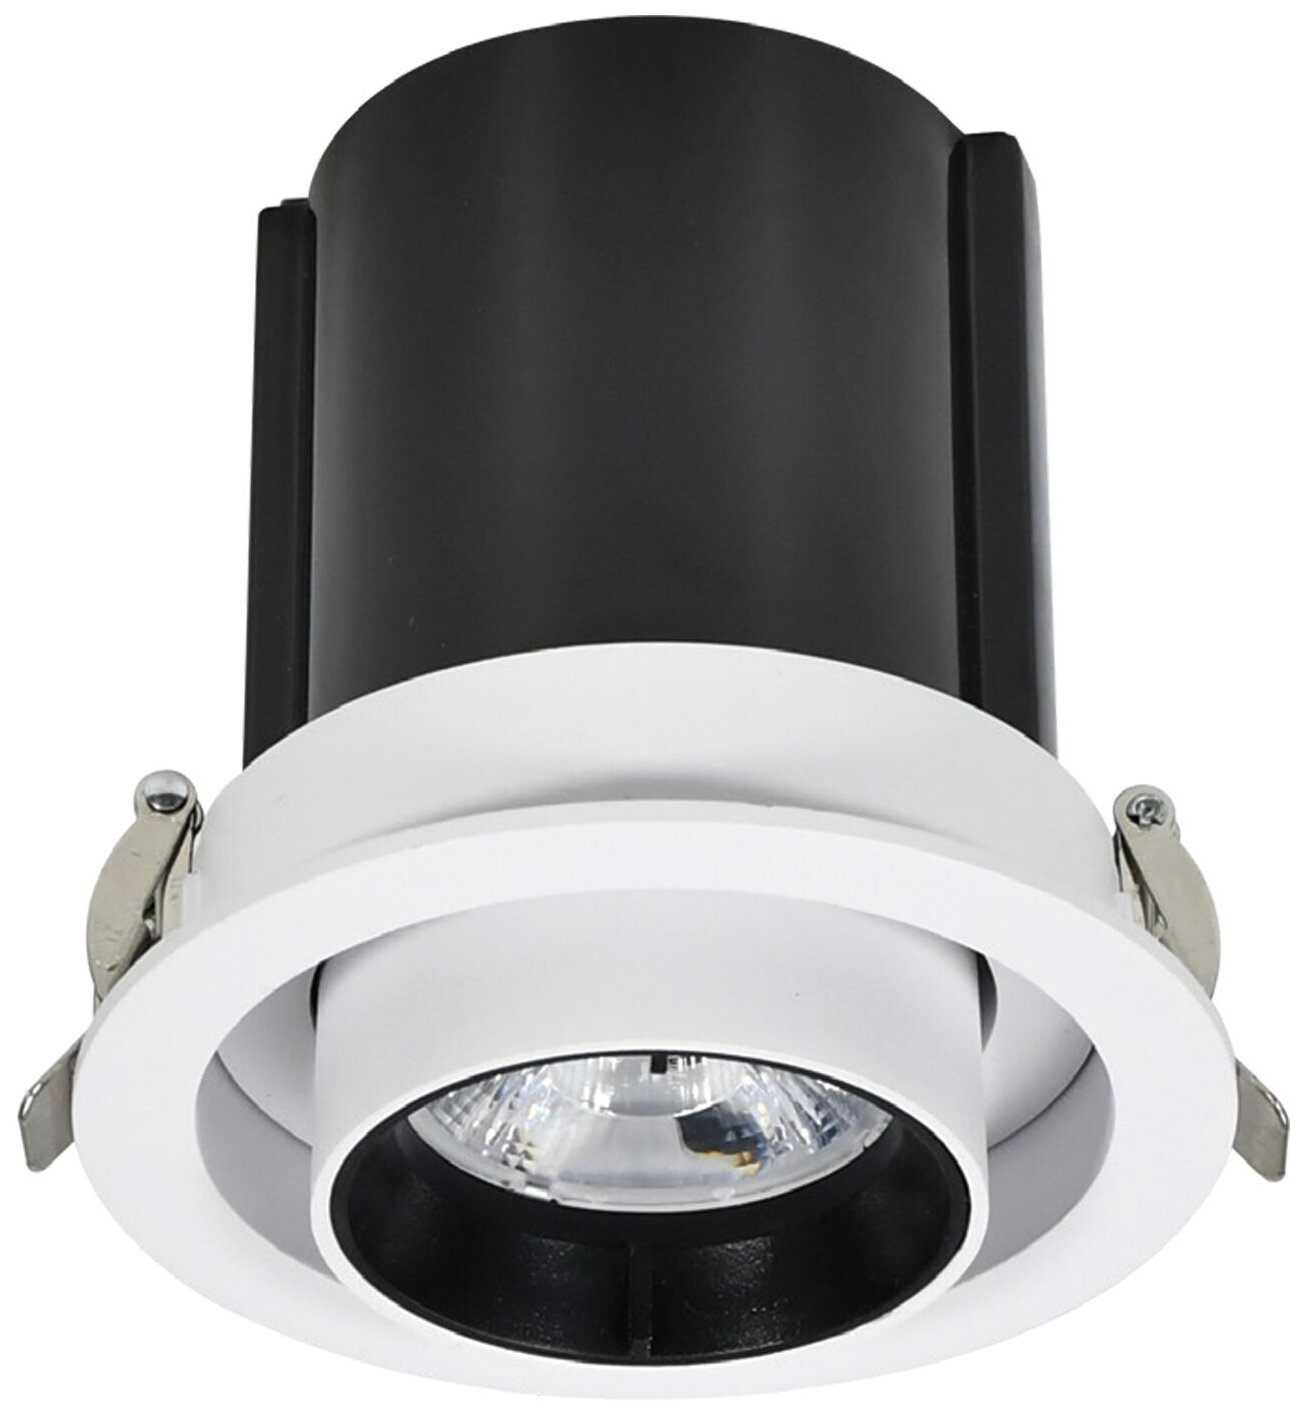 Светильник светодиодный встраиваемый потолочный Artin LED, 18Вт, 1440Лм, 4200К, выдвижной поворотный корпус, цилиндр, 115х120мм, алюминий, белый, Ritter, 59993 7 - фотография № 4